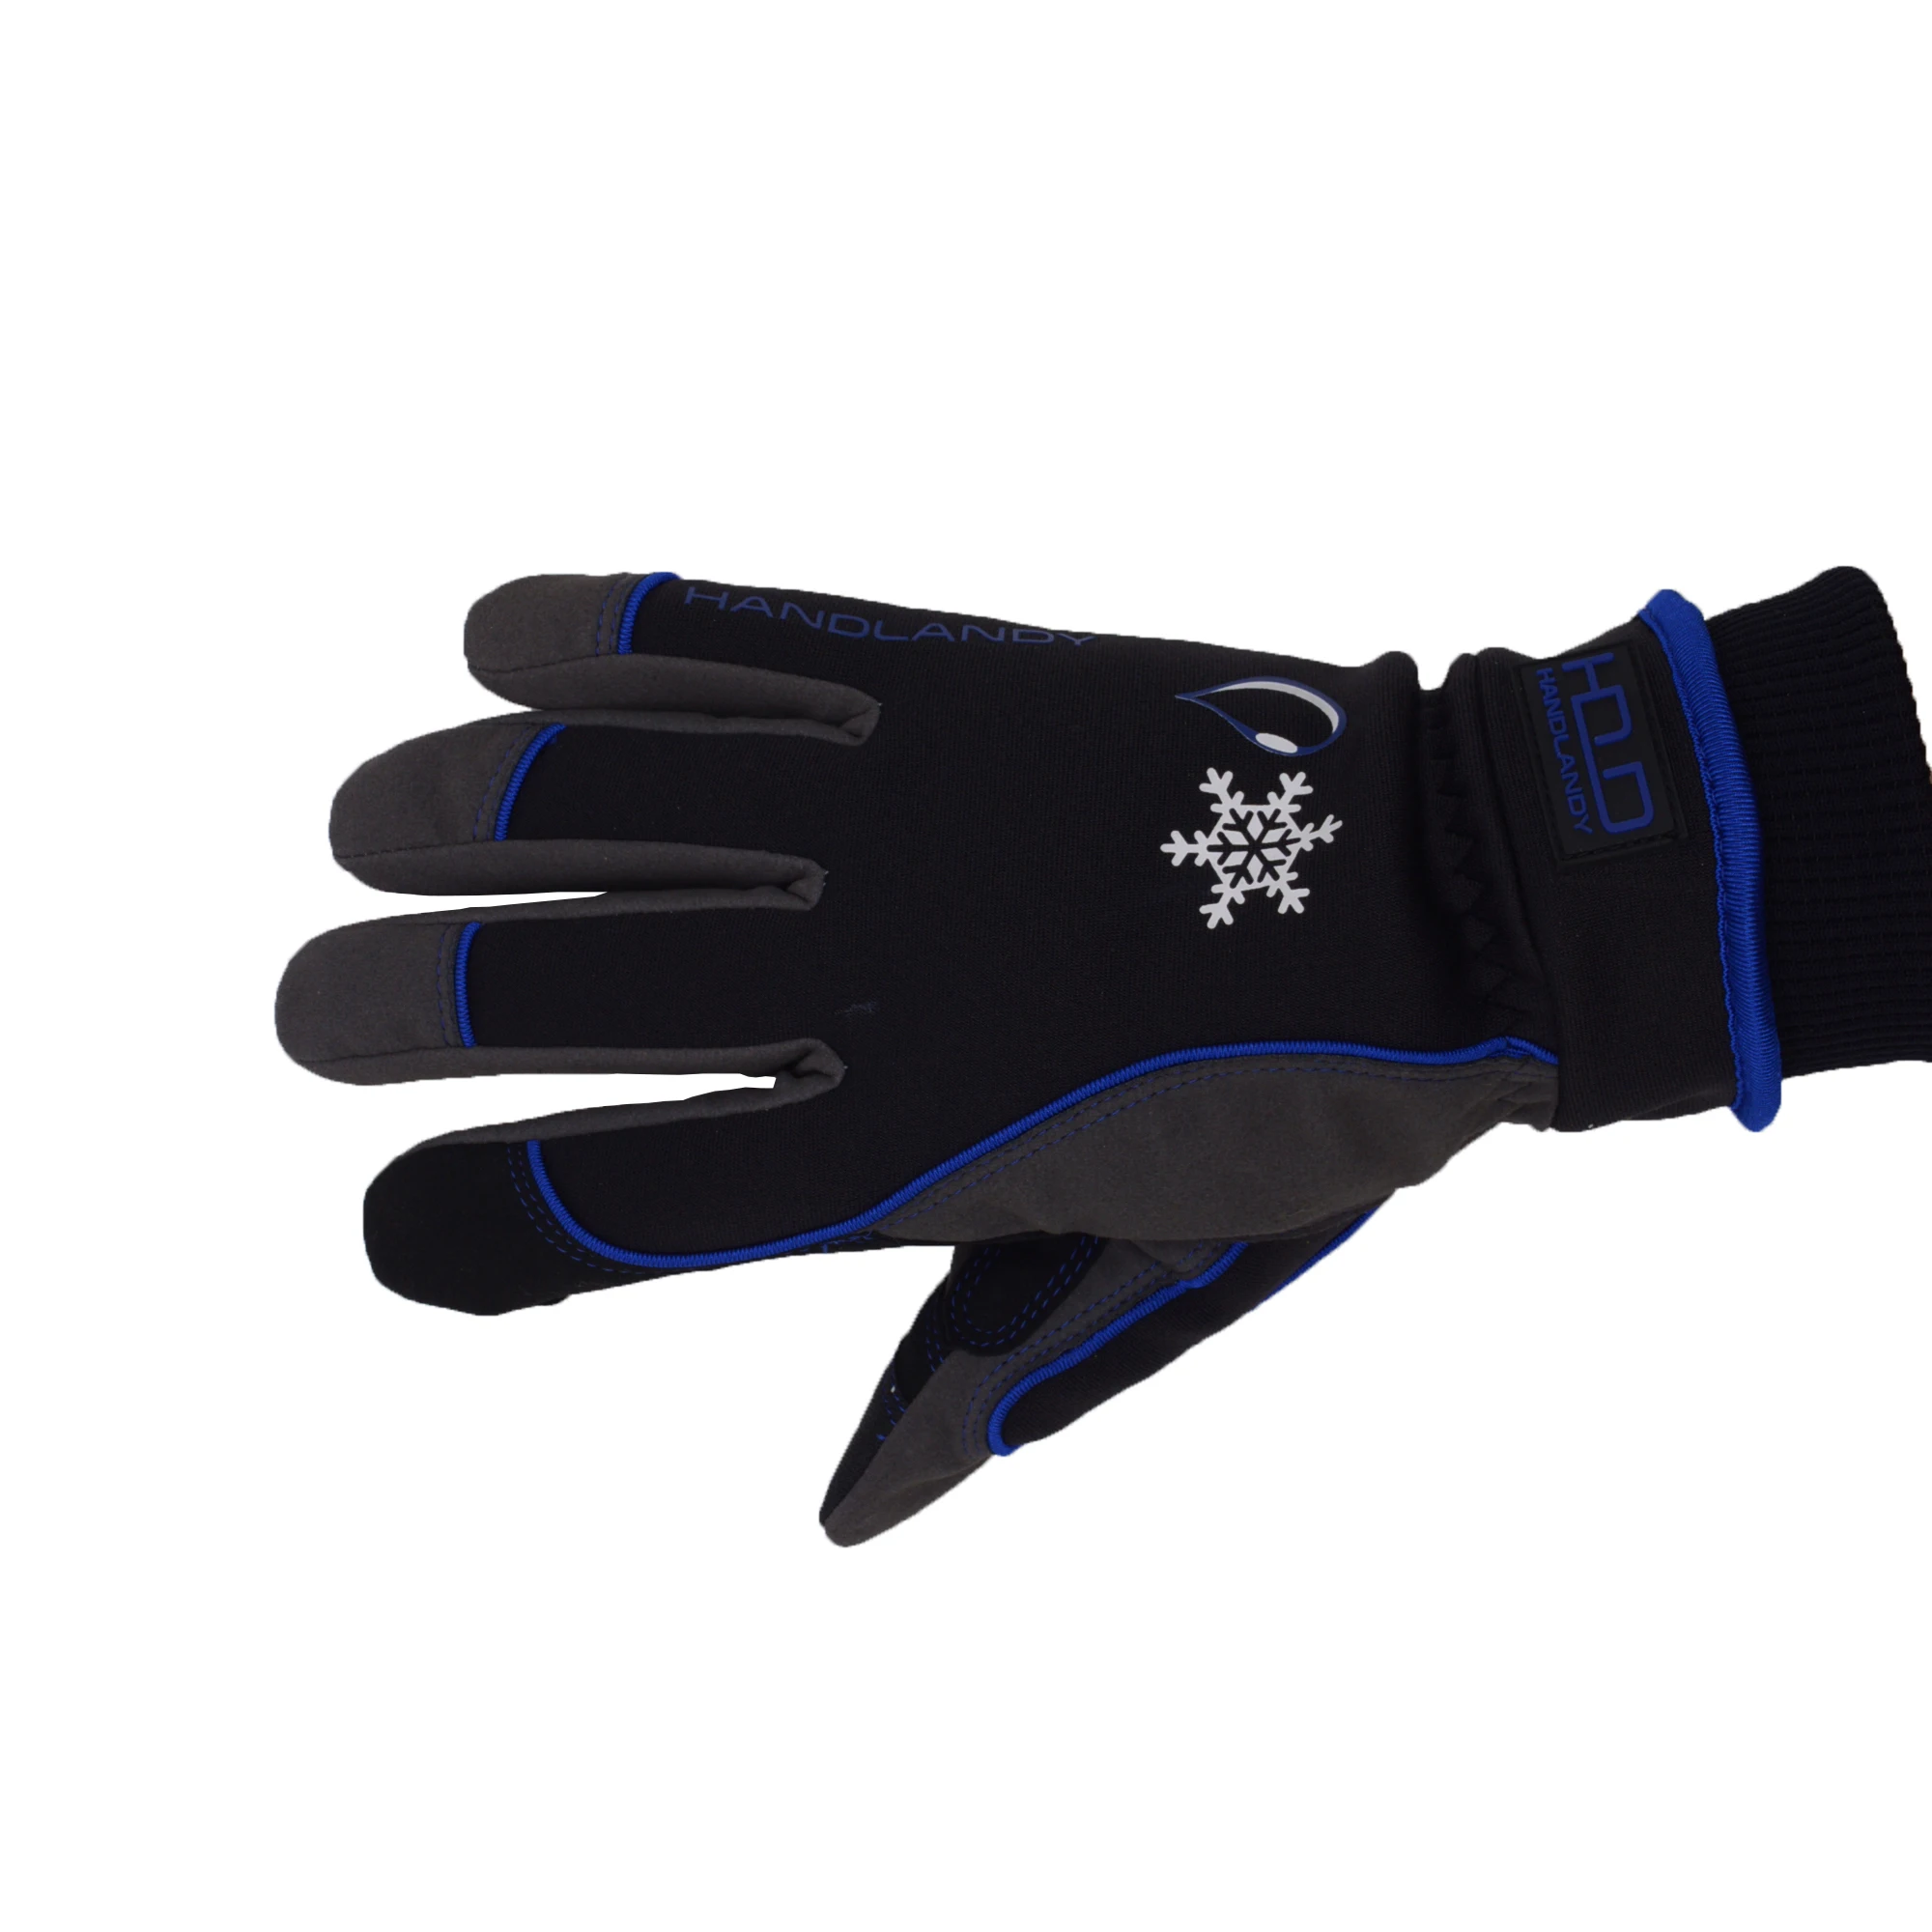 Синие водонепроницаемые теплые зимние перчатки HANDLANDY с сенсорным экраном для мужчин и женщин, для холодной погоды, сноуборда, работы, лыж